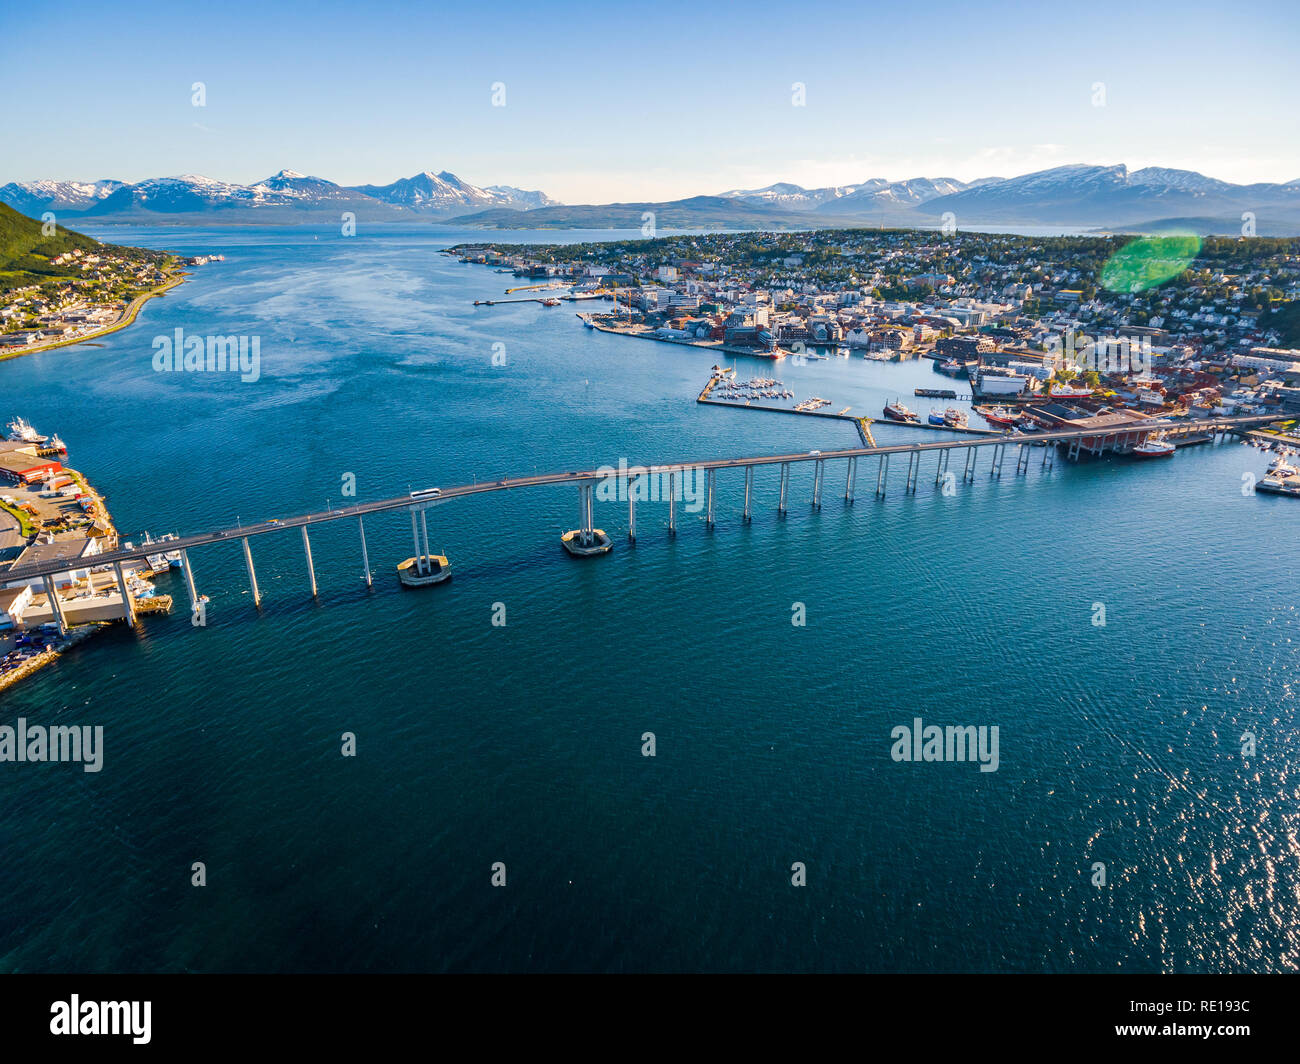 Puente de la ciudad de Tromso, Noruega, la fotografía aérea. Tromso es considerada la ciudad más septentrional del mundo, con una población de más de 50.000. Foto de stock